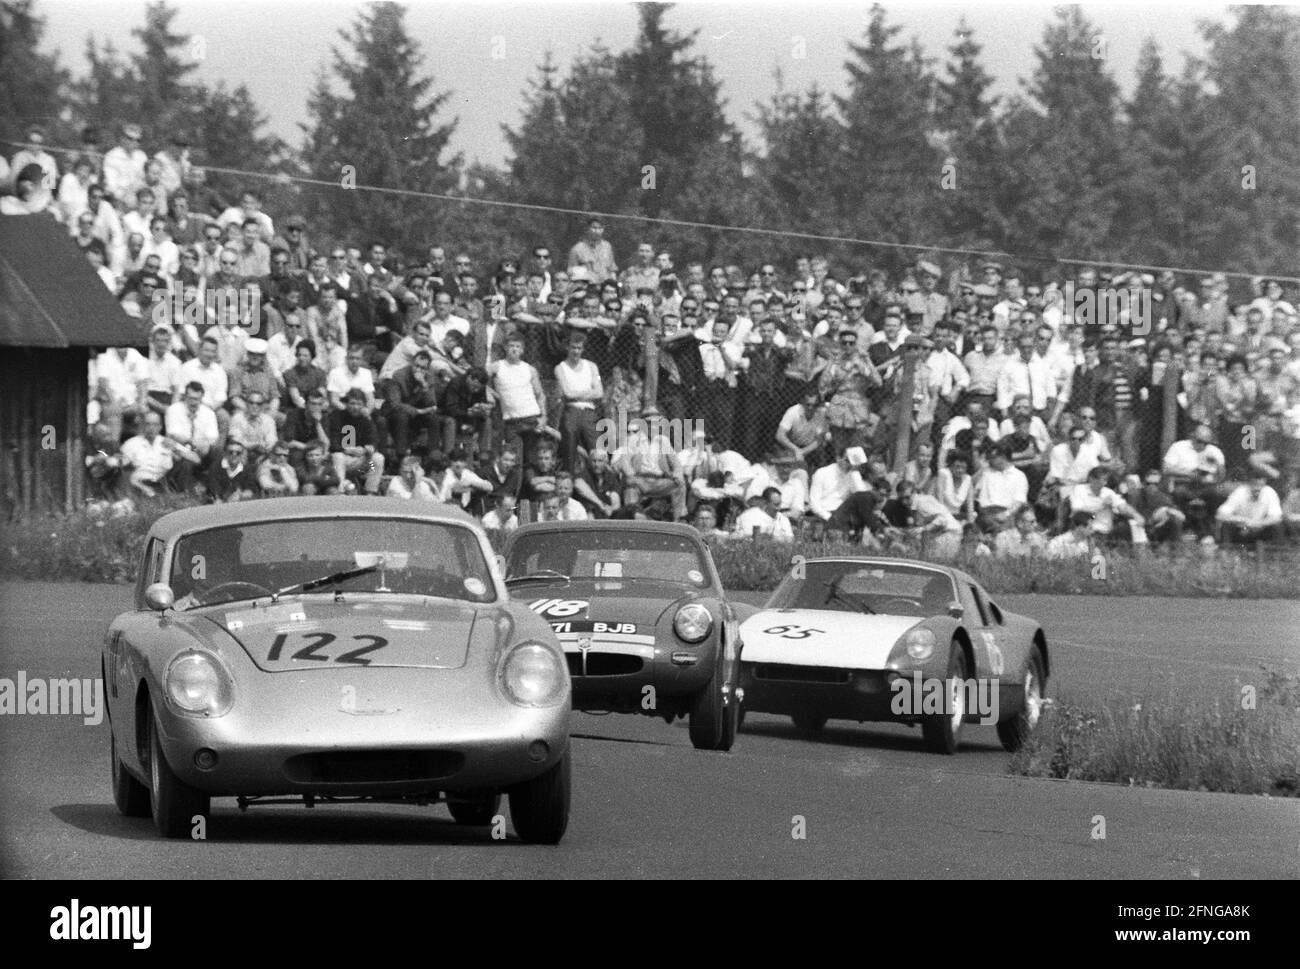 Course de 1000km sur le Nürburgring 31.05.1964. Devant un Austin Healey Sebring Sprite (No 122) , MG Midget (No 118) et une Porsche 904 GTS (N° 65). En arrière-plan de nombreux spectateurs , séparés seulement par une clôture. [traduction automatique] Banque D'Images